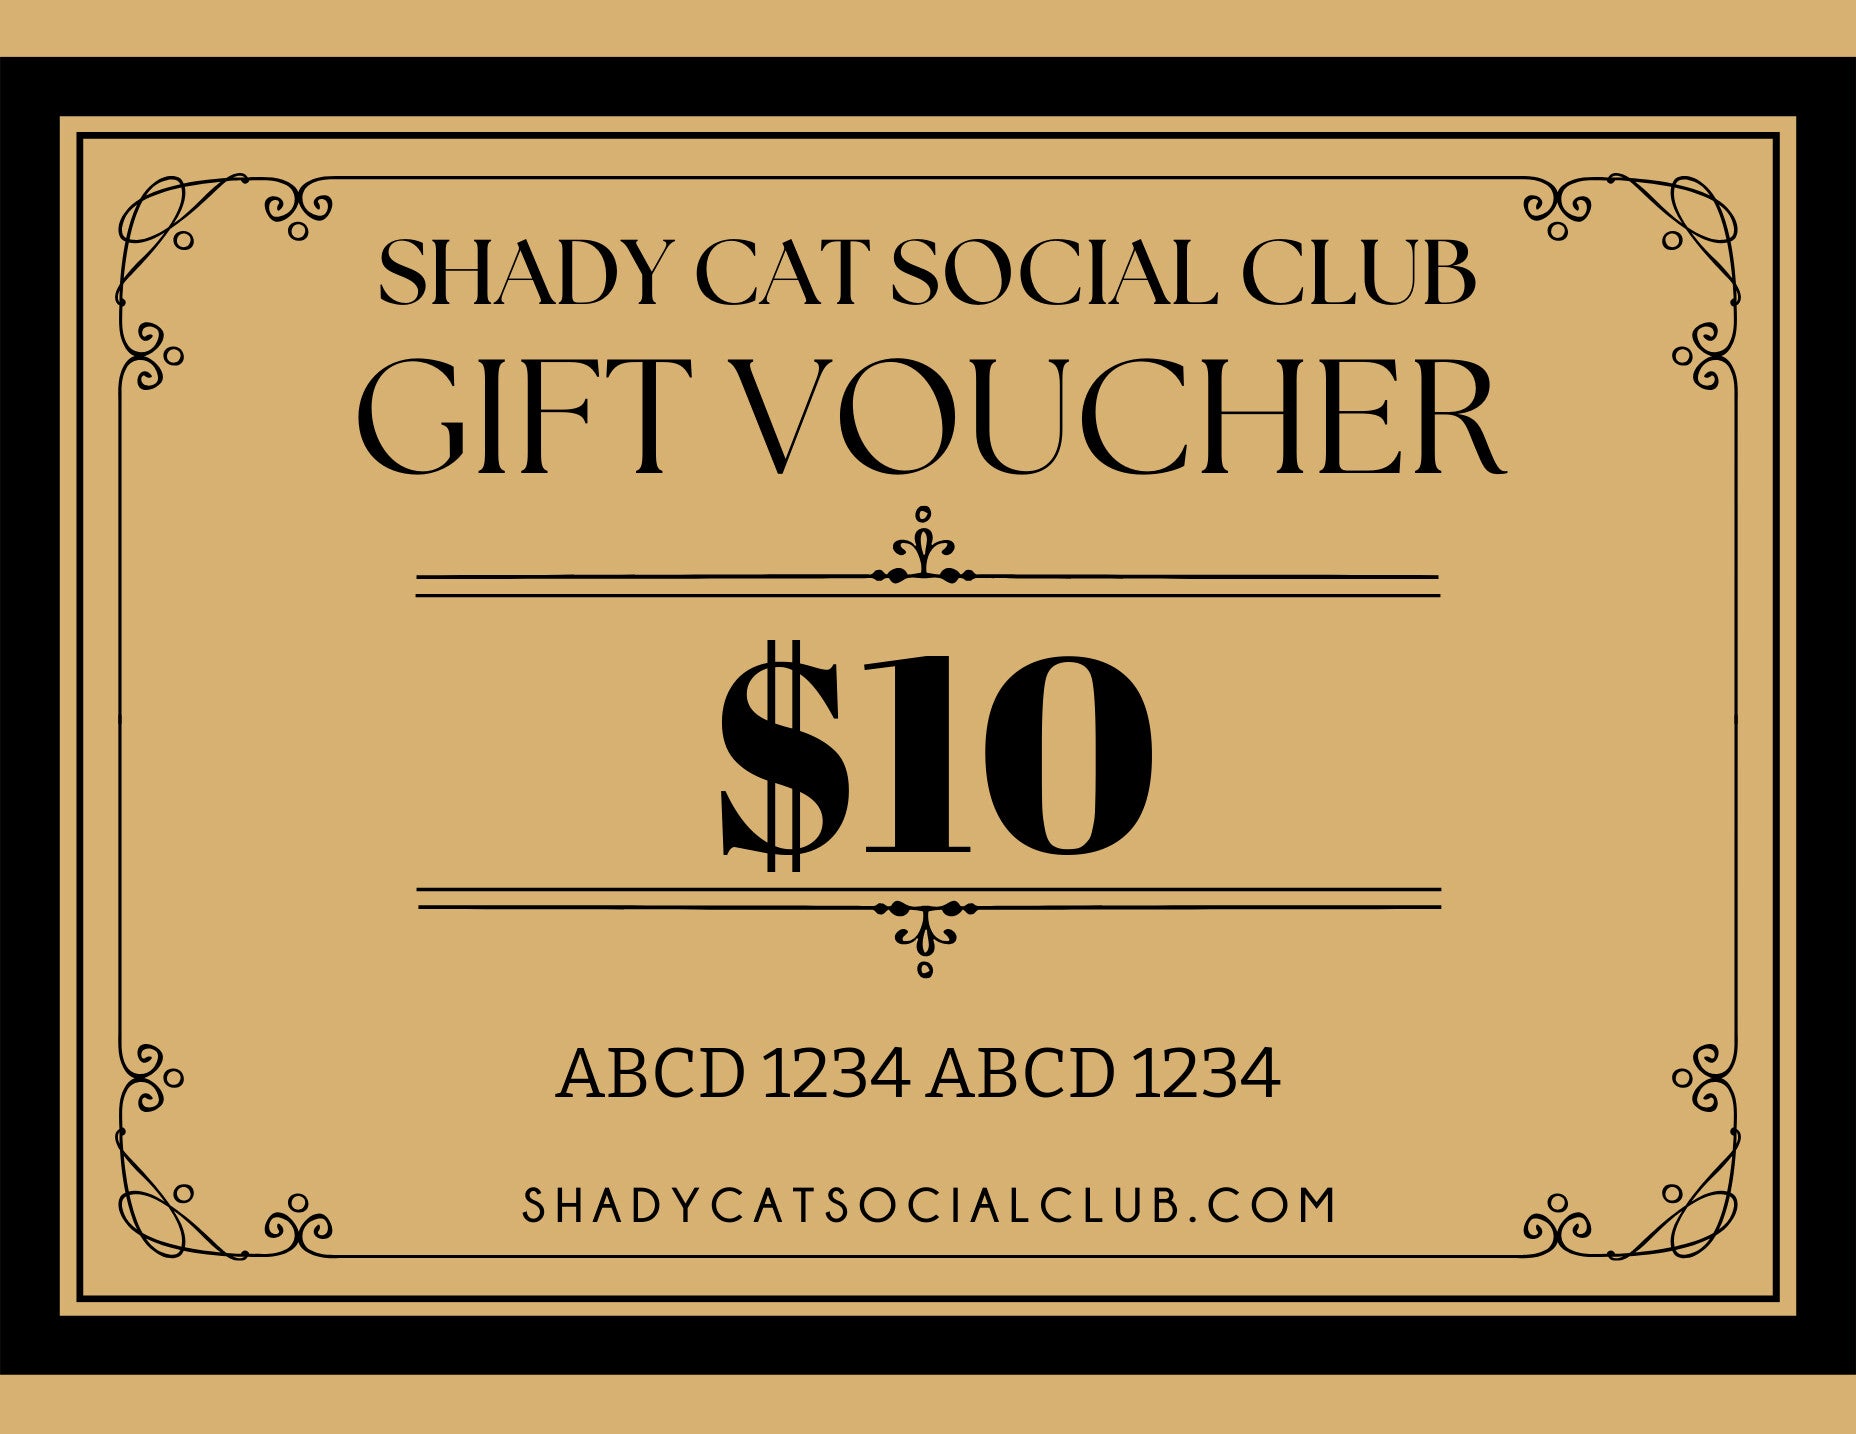 Shady Cat Social Club Gift Card